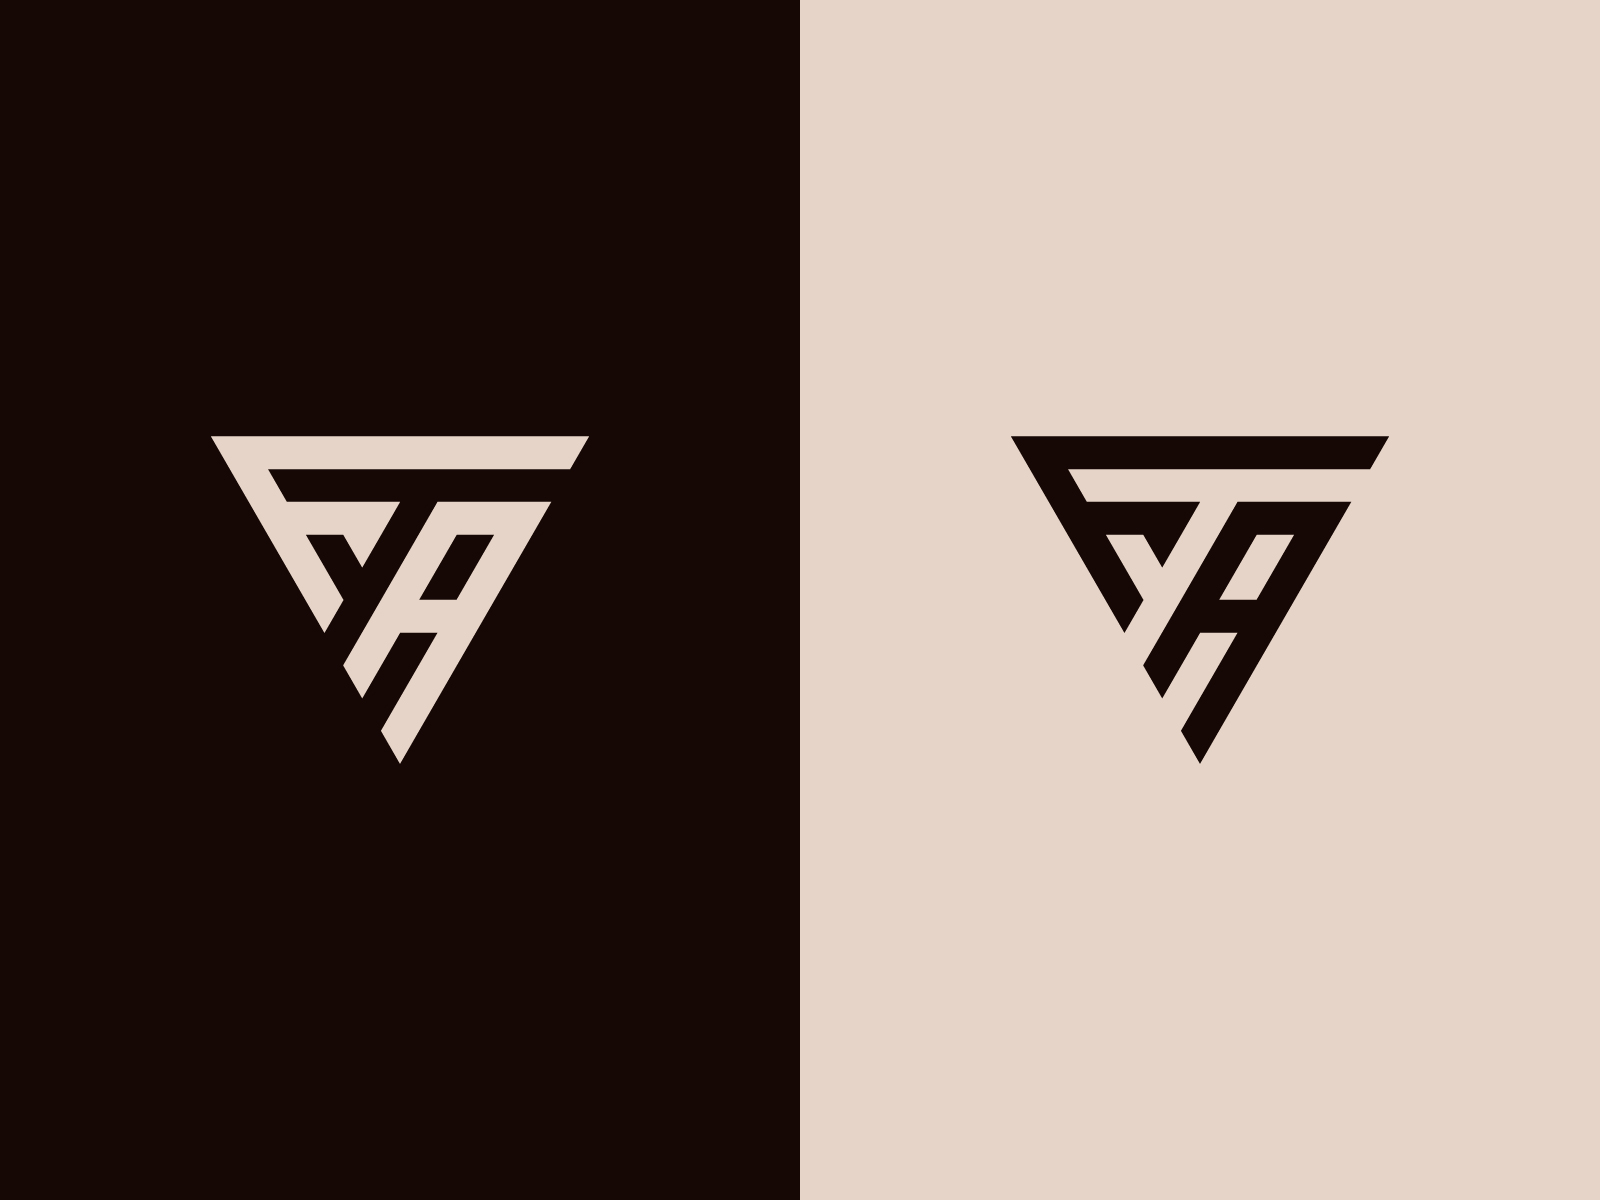 FA Logo / FA Monogram / FA Initial Logo by Creative Designer on ...